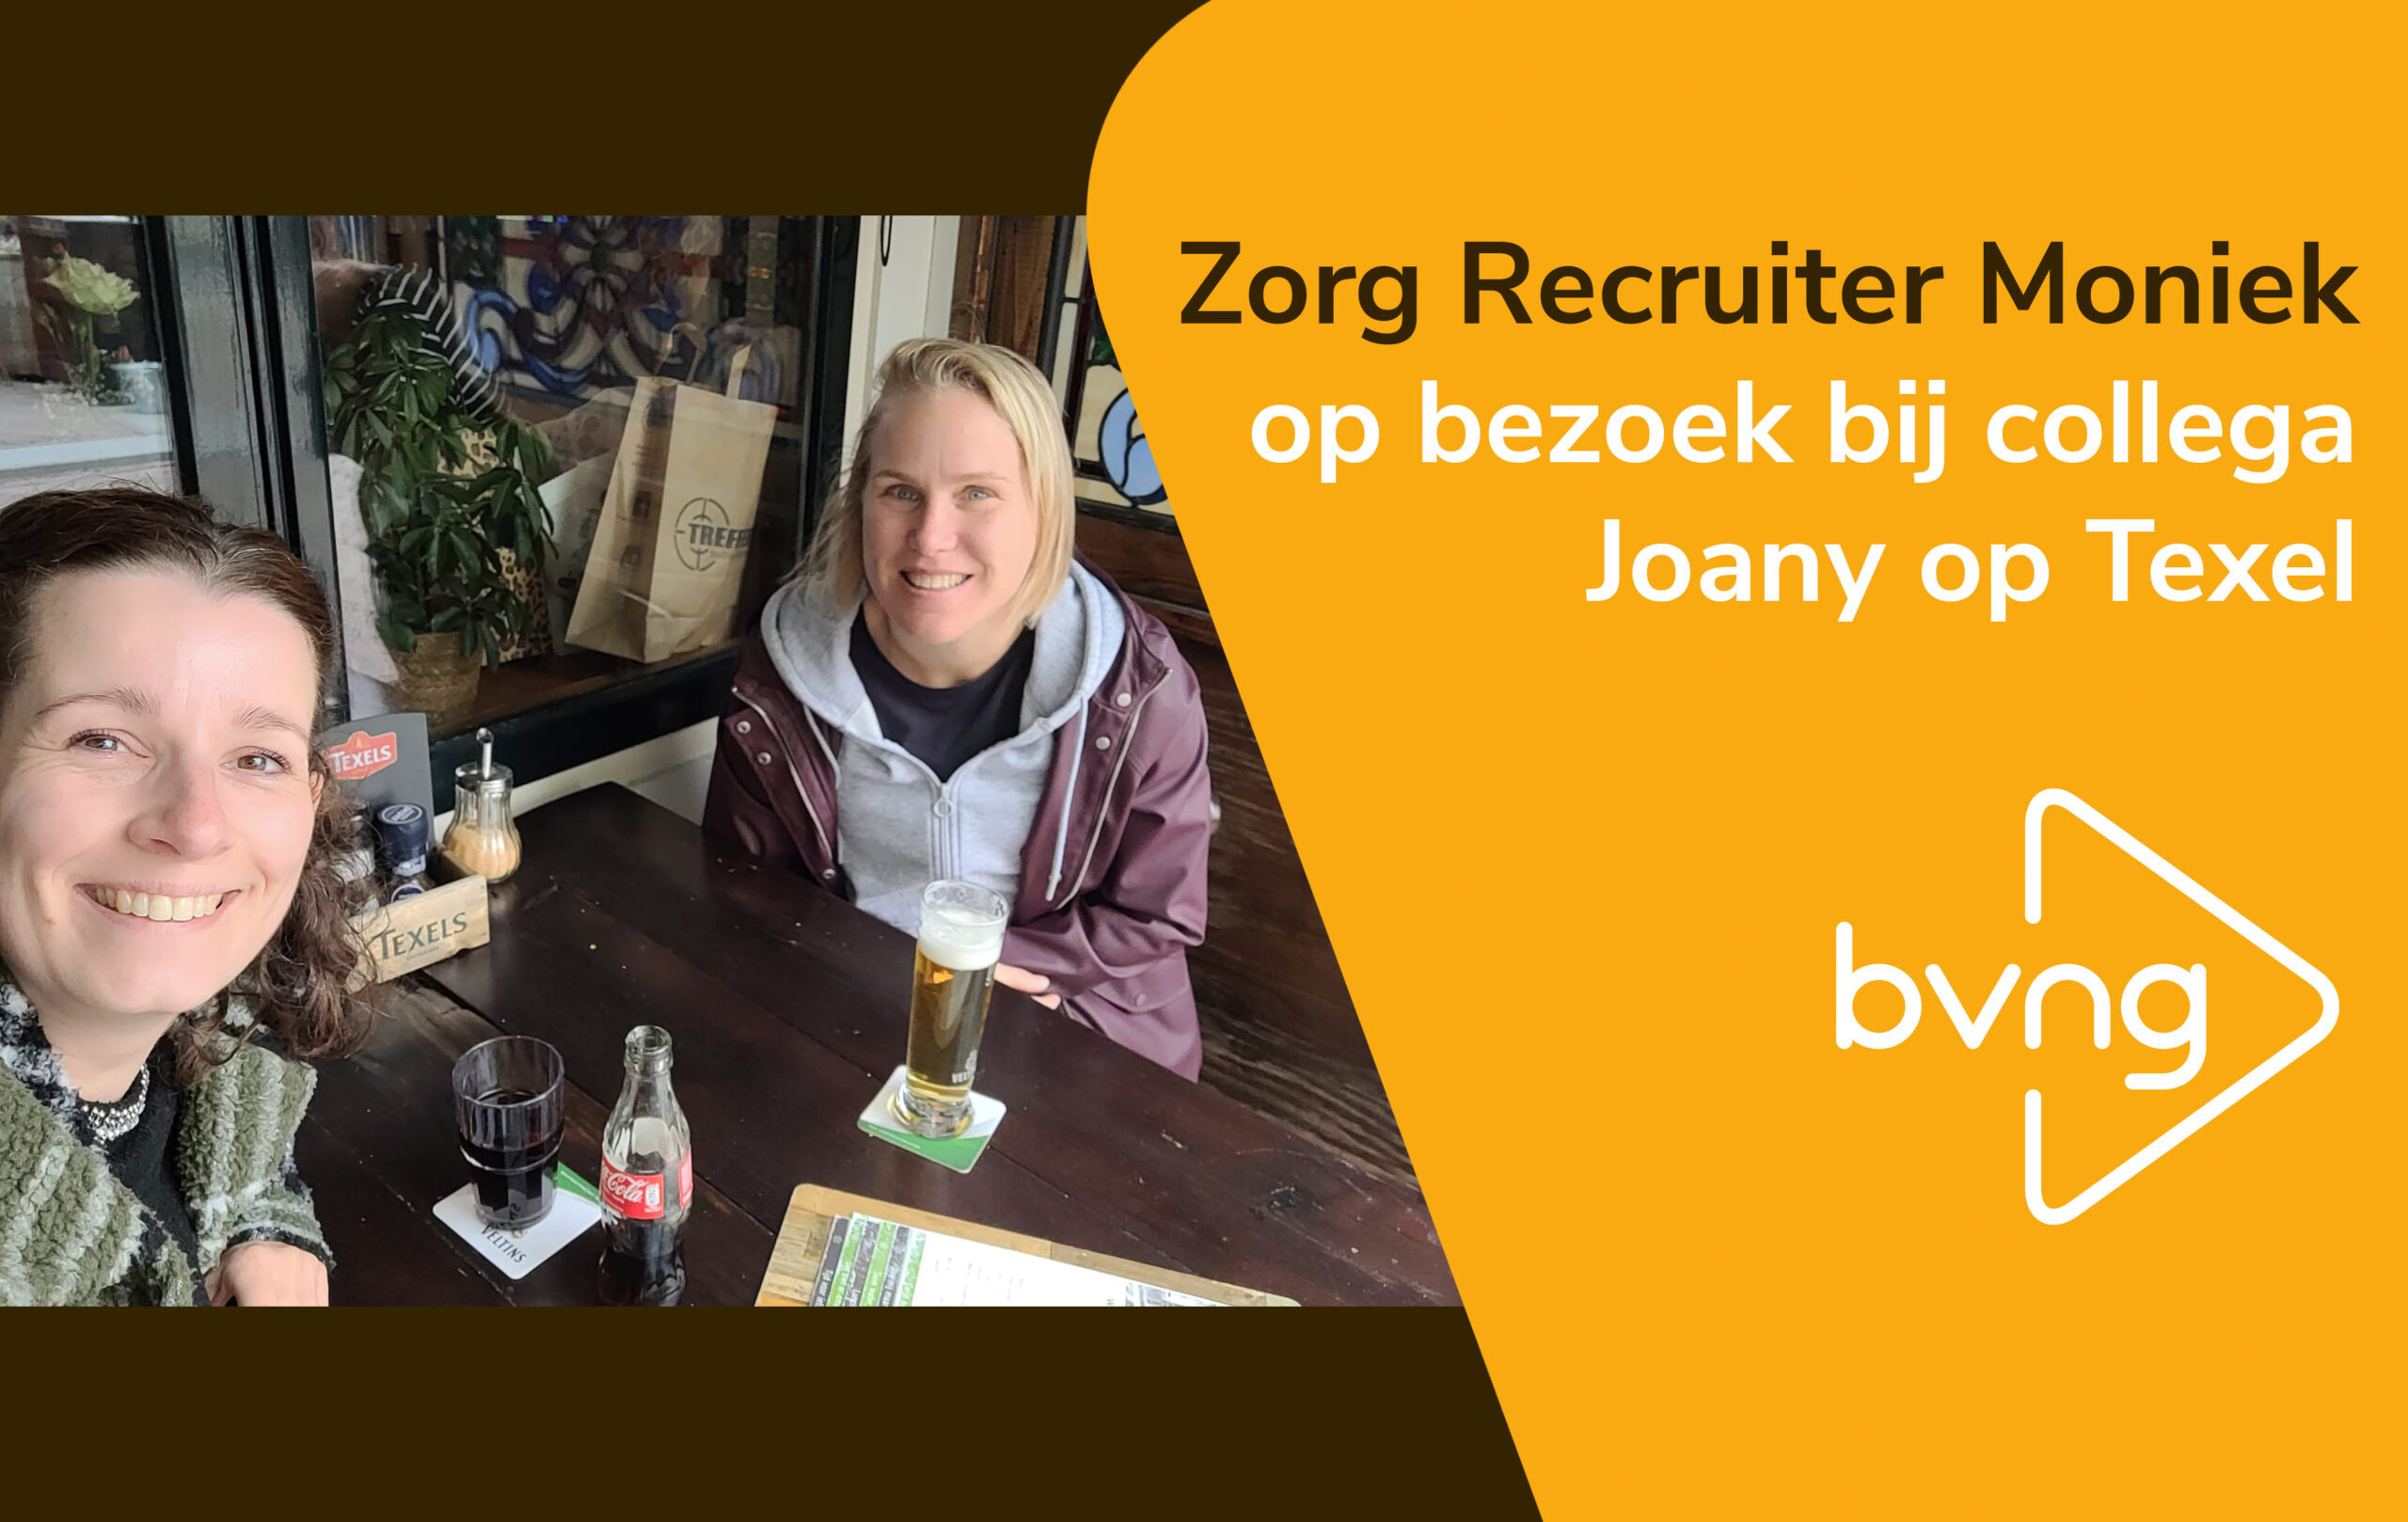 Op bezoek bij Verzorgende IG collega Joany op Texel